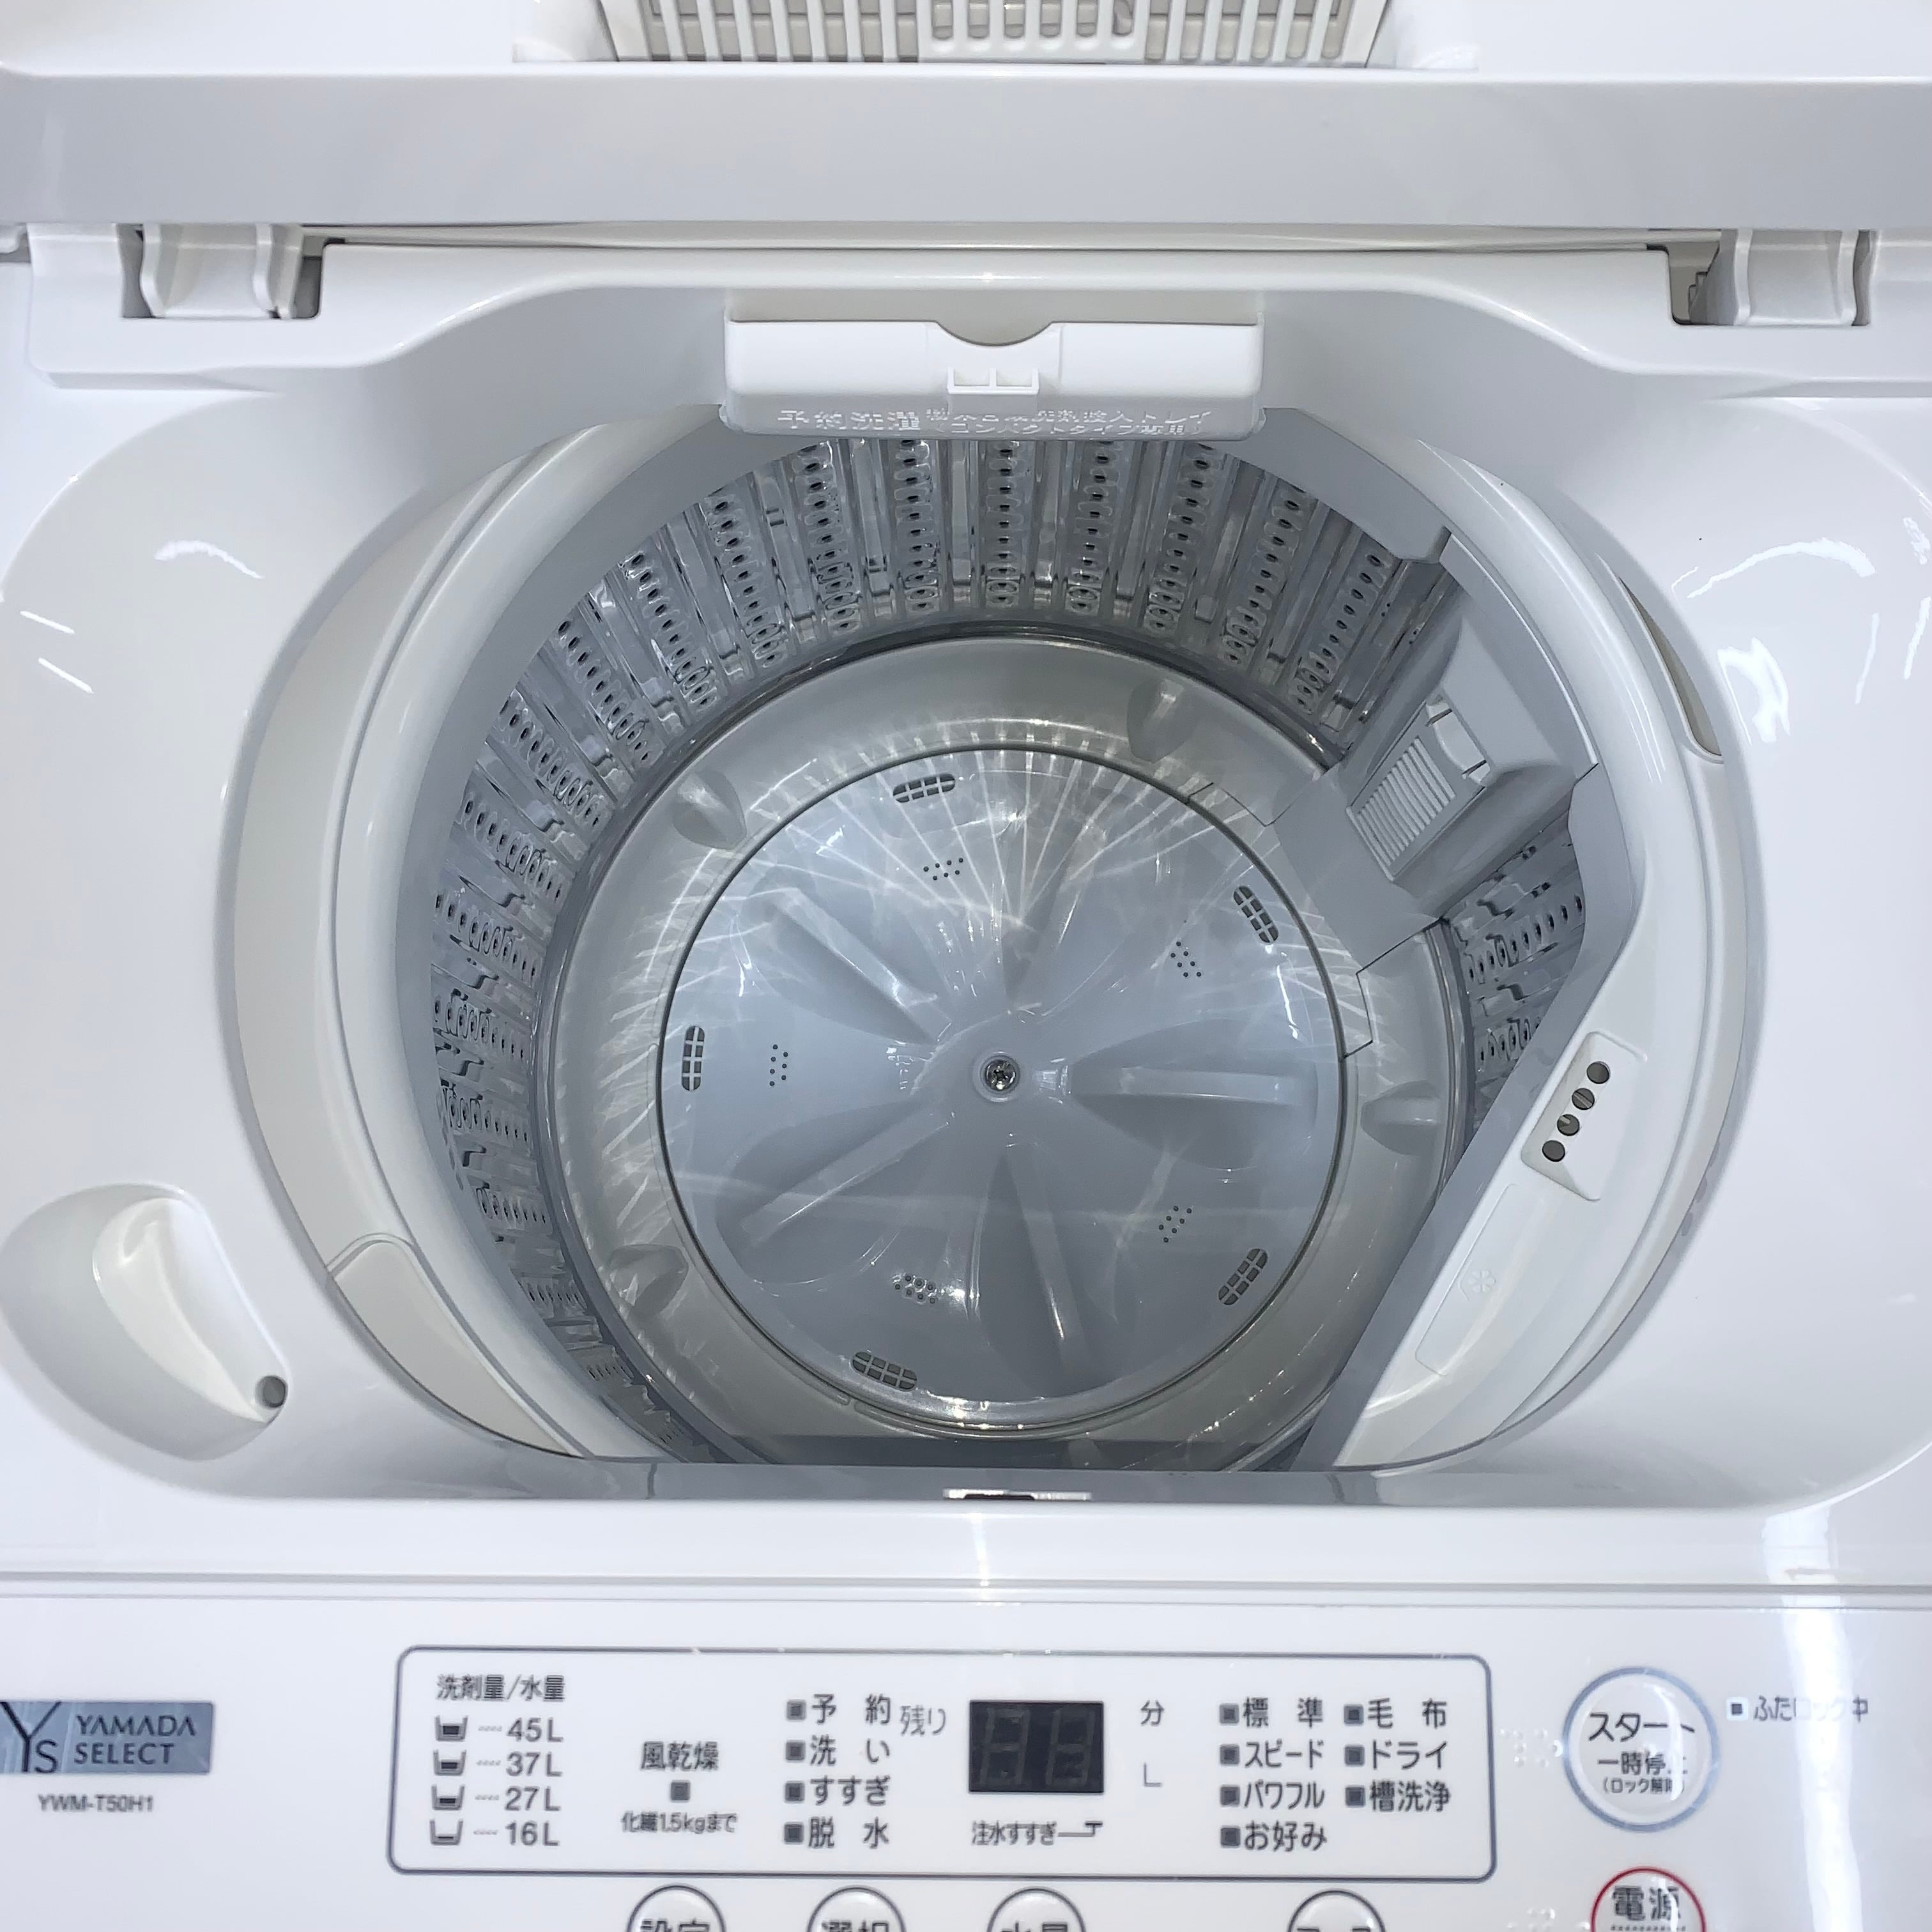 通販できます ヤマダセレクト洗濯機5Kg 2022年式YWM-T50H1 - 生活家電